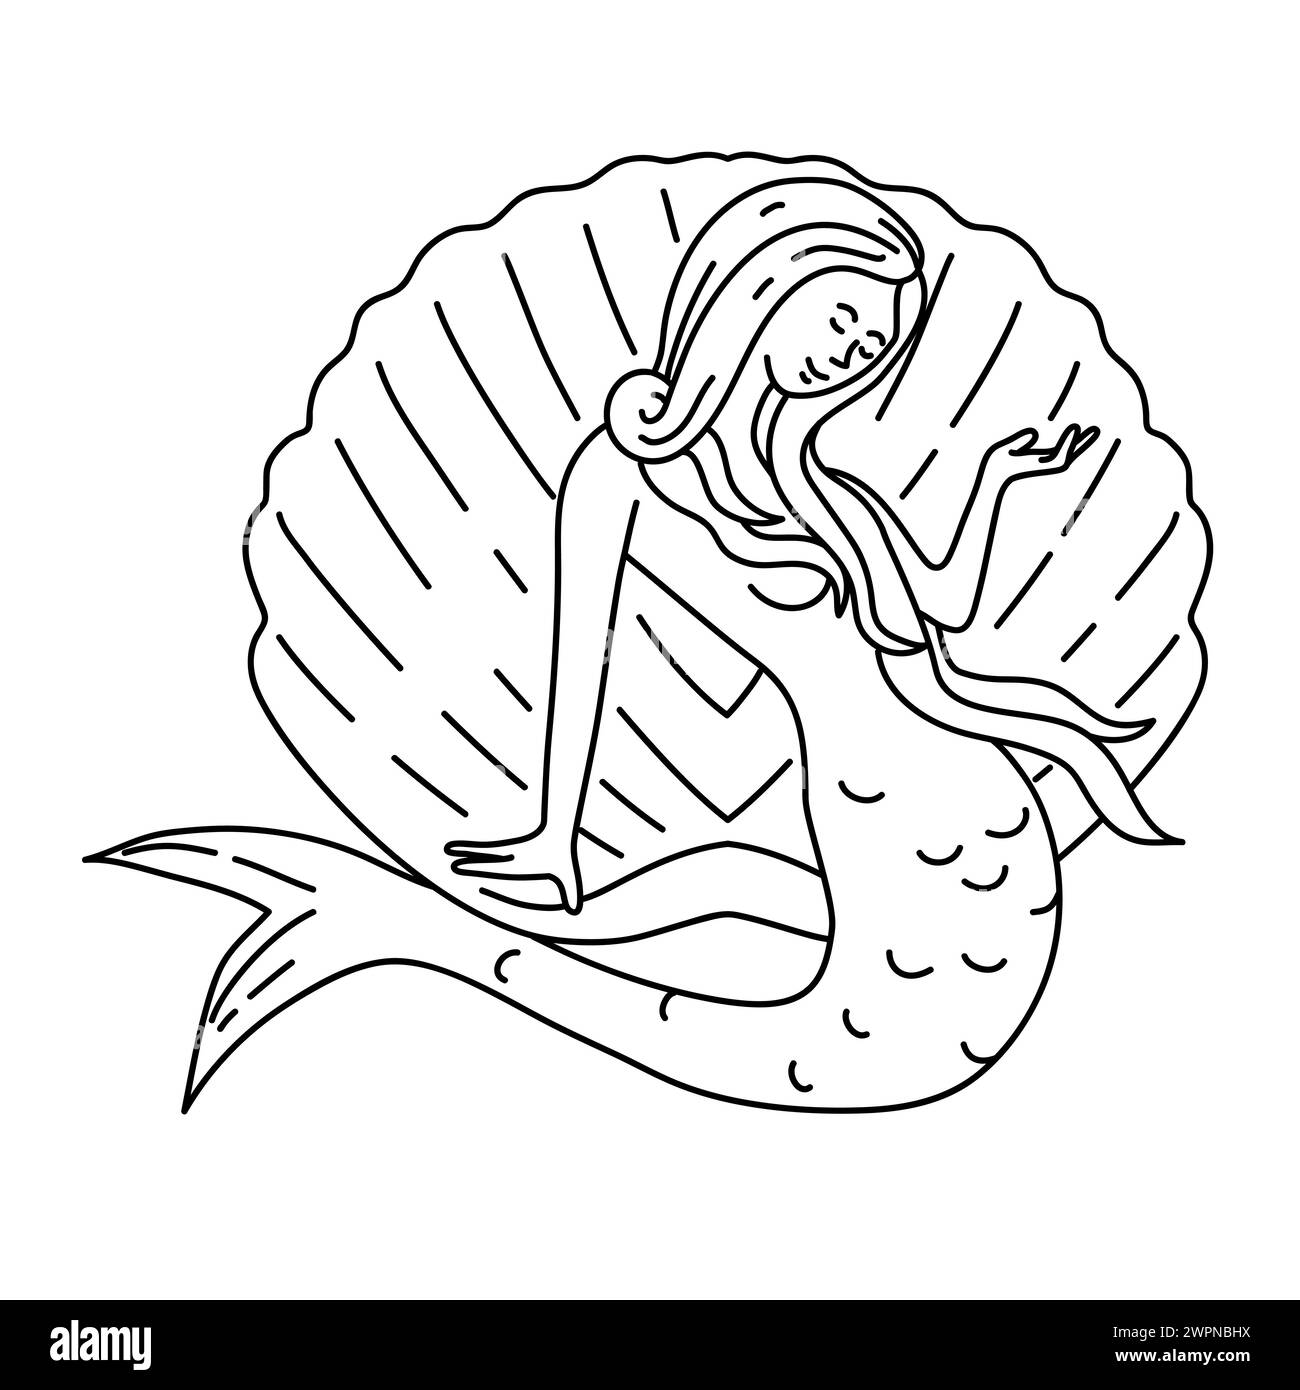 Illustrazione monofila di una sirena o sirena con lunghi capelli che scorrono seduti su una conchiglia di vongole vista dalla parte anteriore, realizzata in stile art-line monolina. Foto Stock